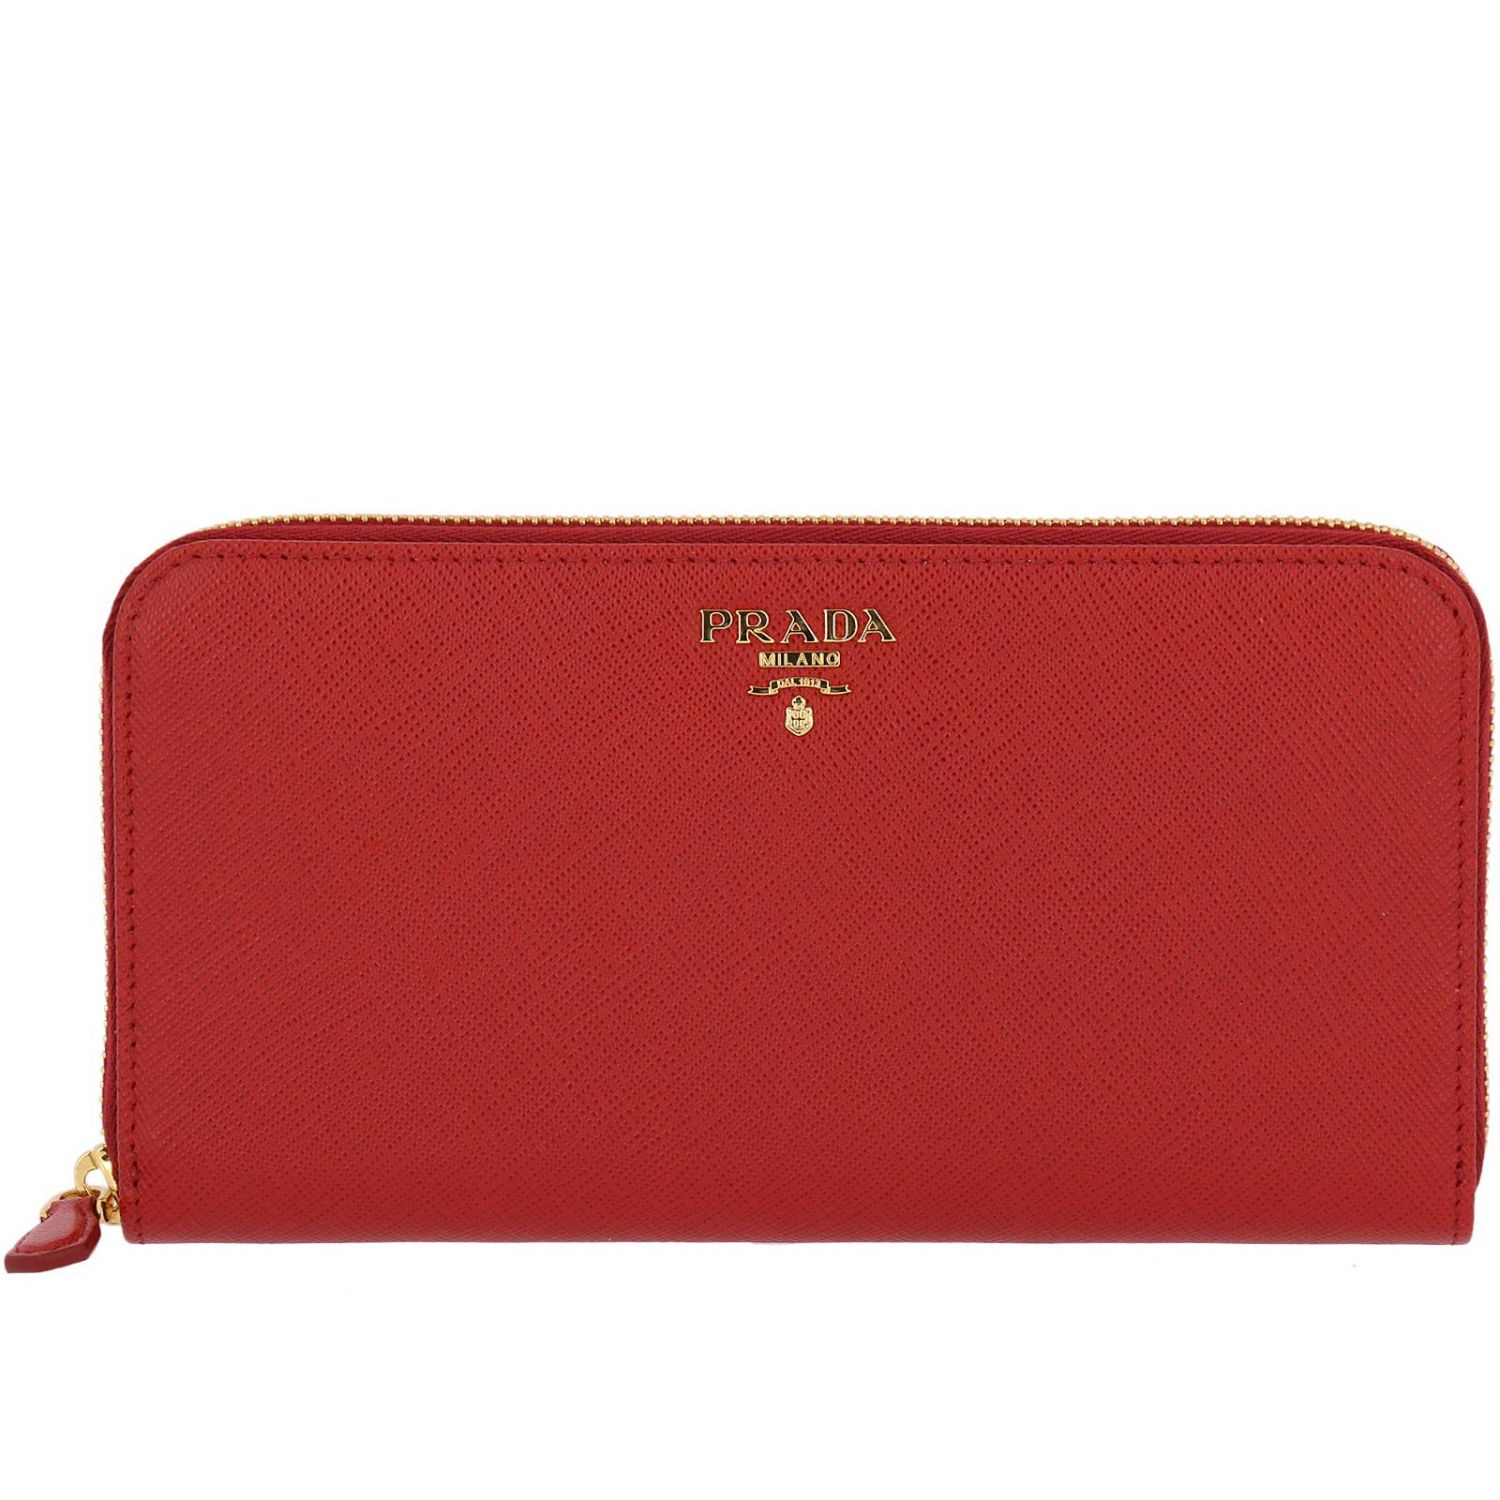 Wallet women Prada | Wallet Prada Women Red | Wallet Prada 1ML506 QWA ...